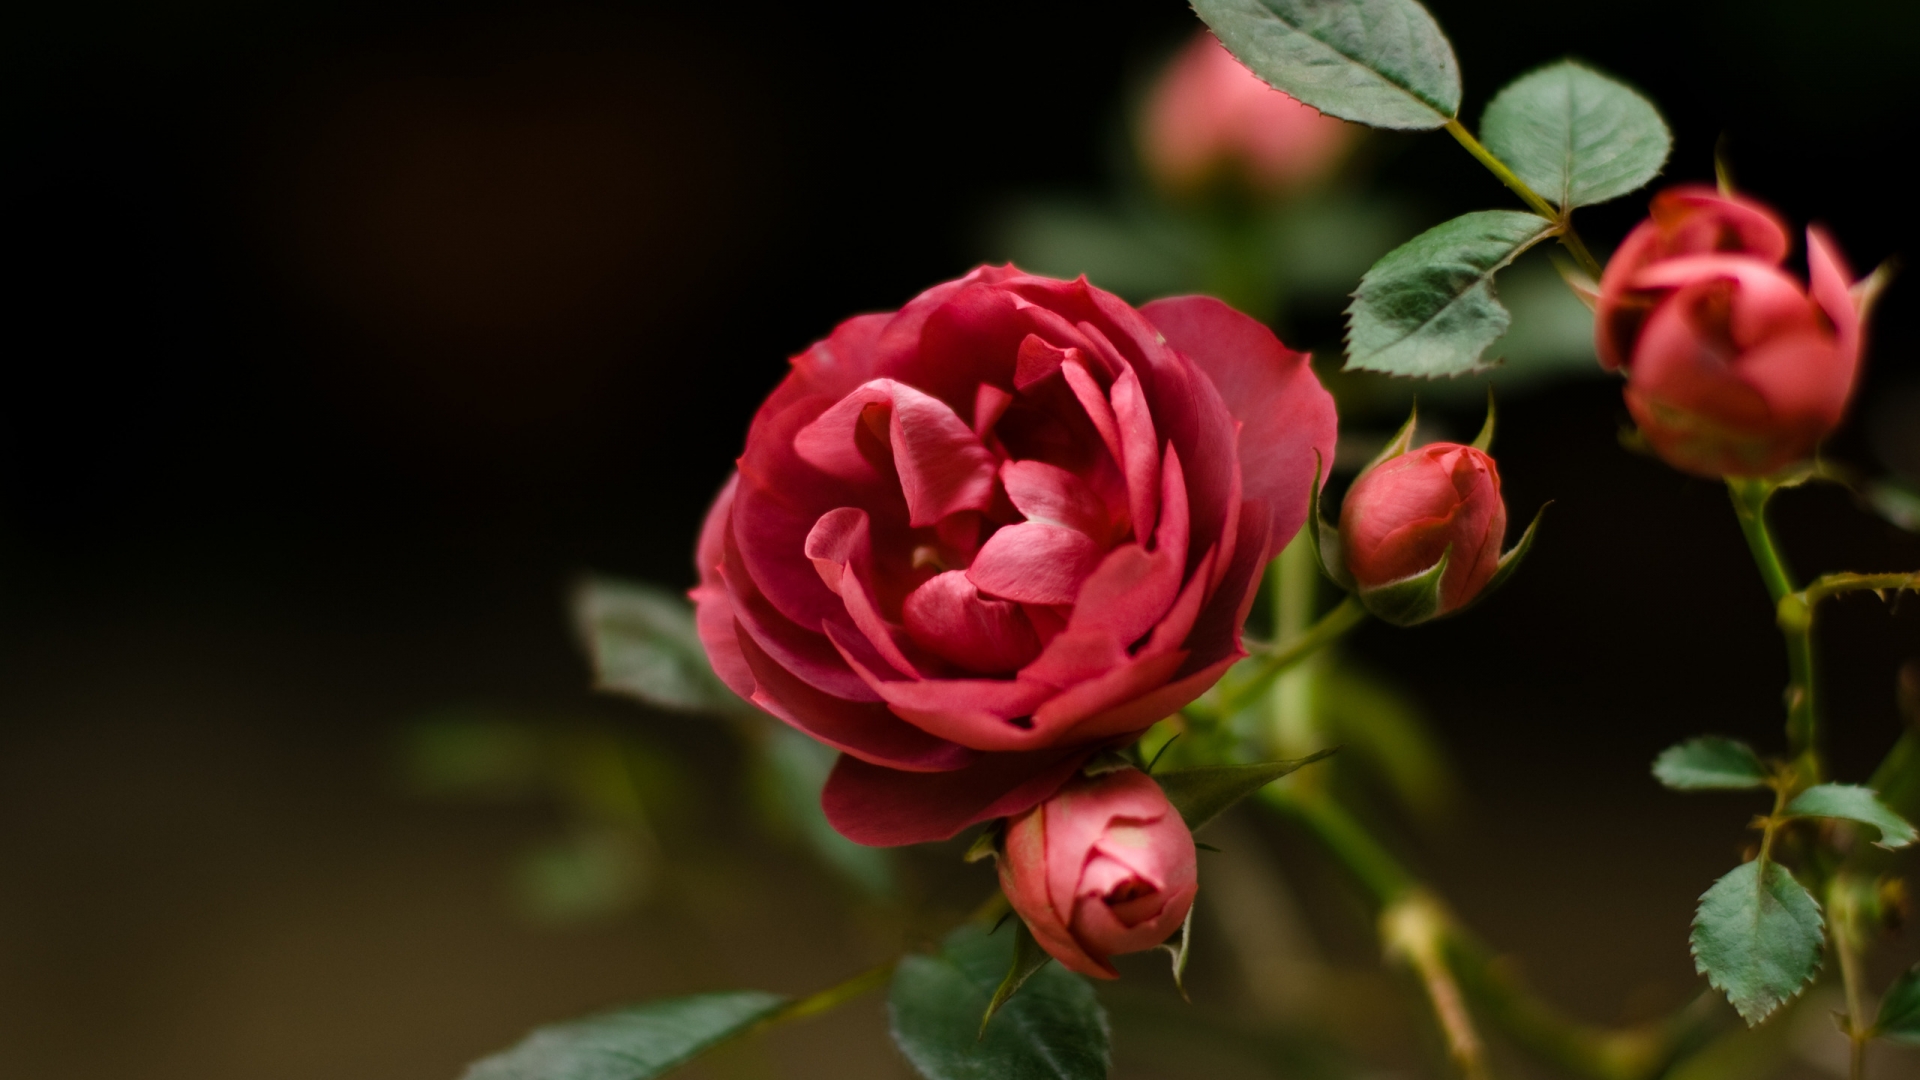 Rose Flower for 1920 x 1080 HDTV 1080p resolution